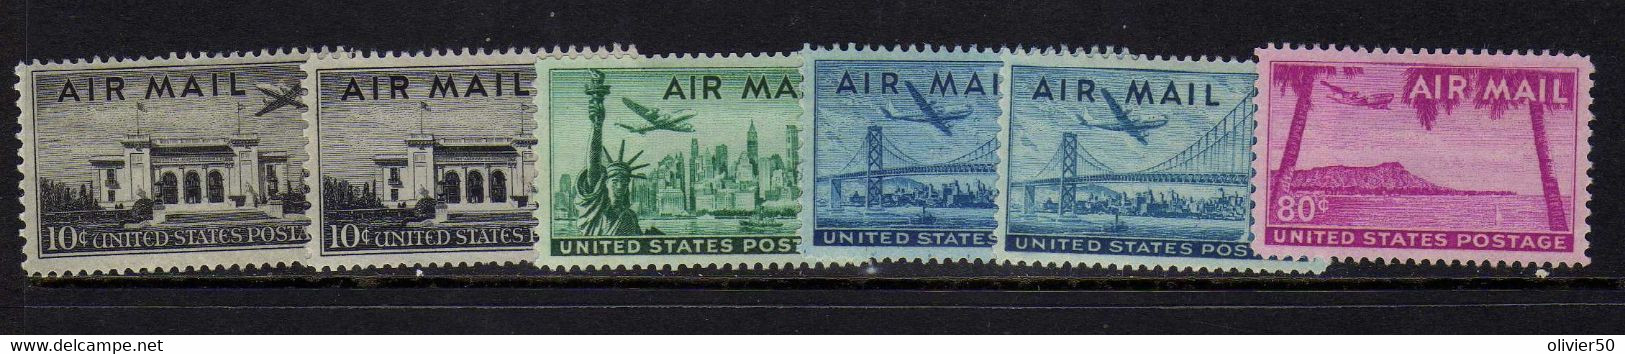 Etats-Unis (1947-52)  - Poste Aerienne   Avion - Sites -  Neufs* - MLH - 2b. 1941-1960 Unused